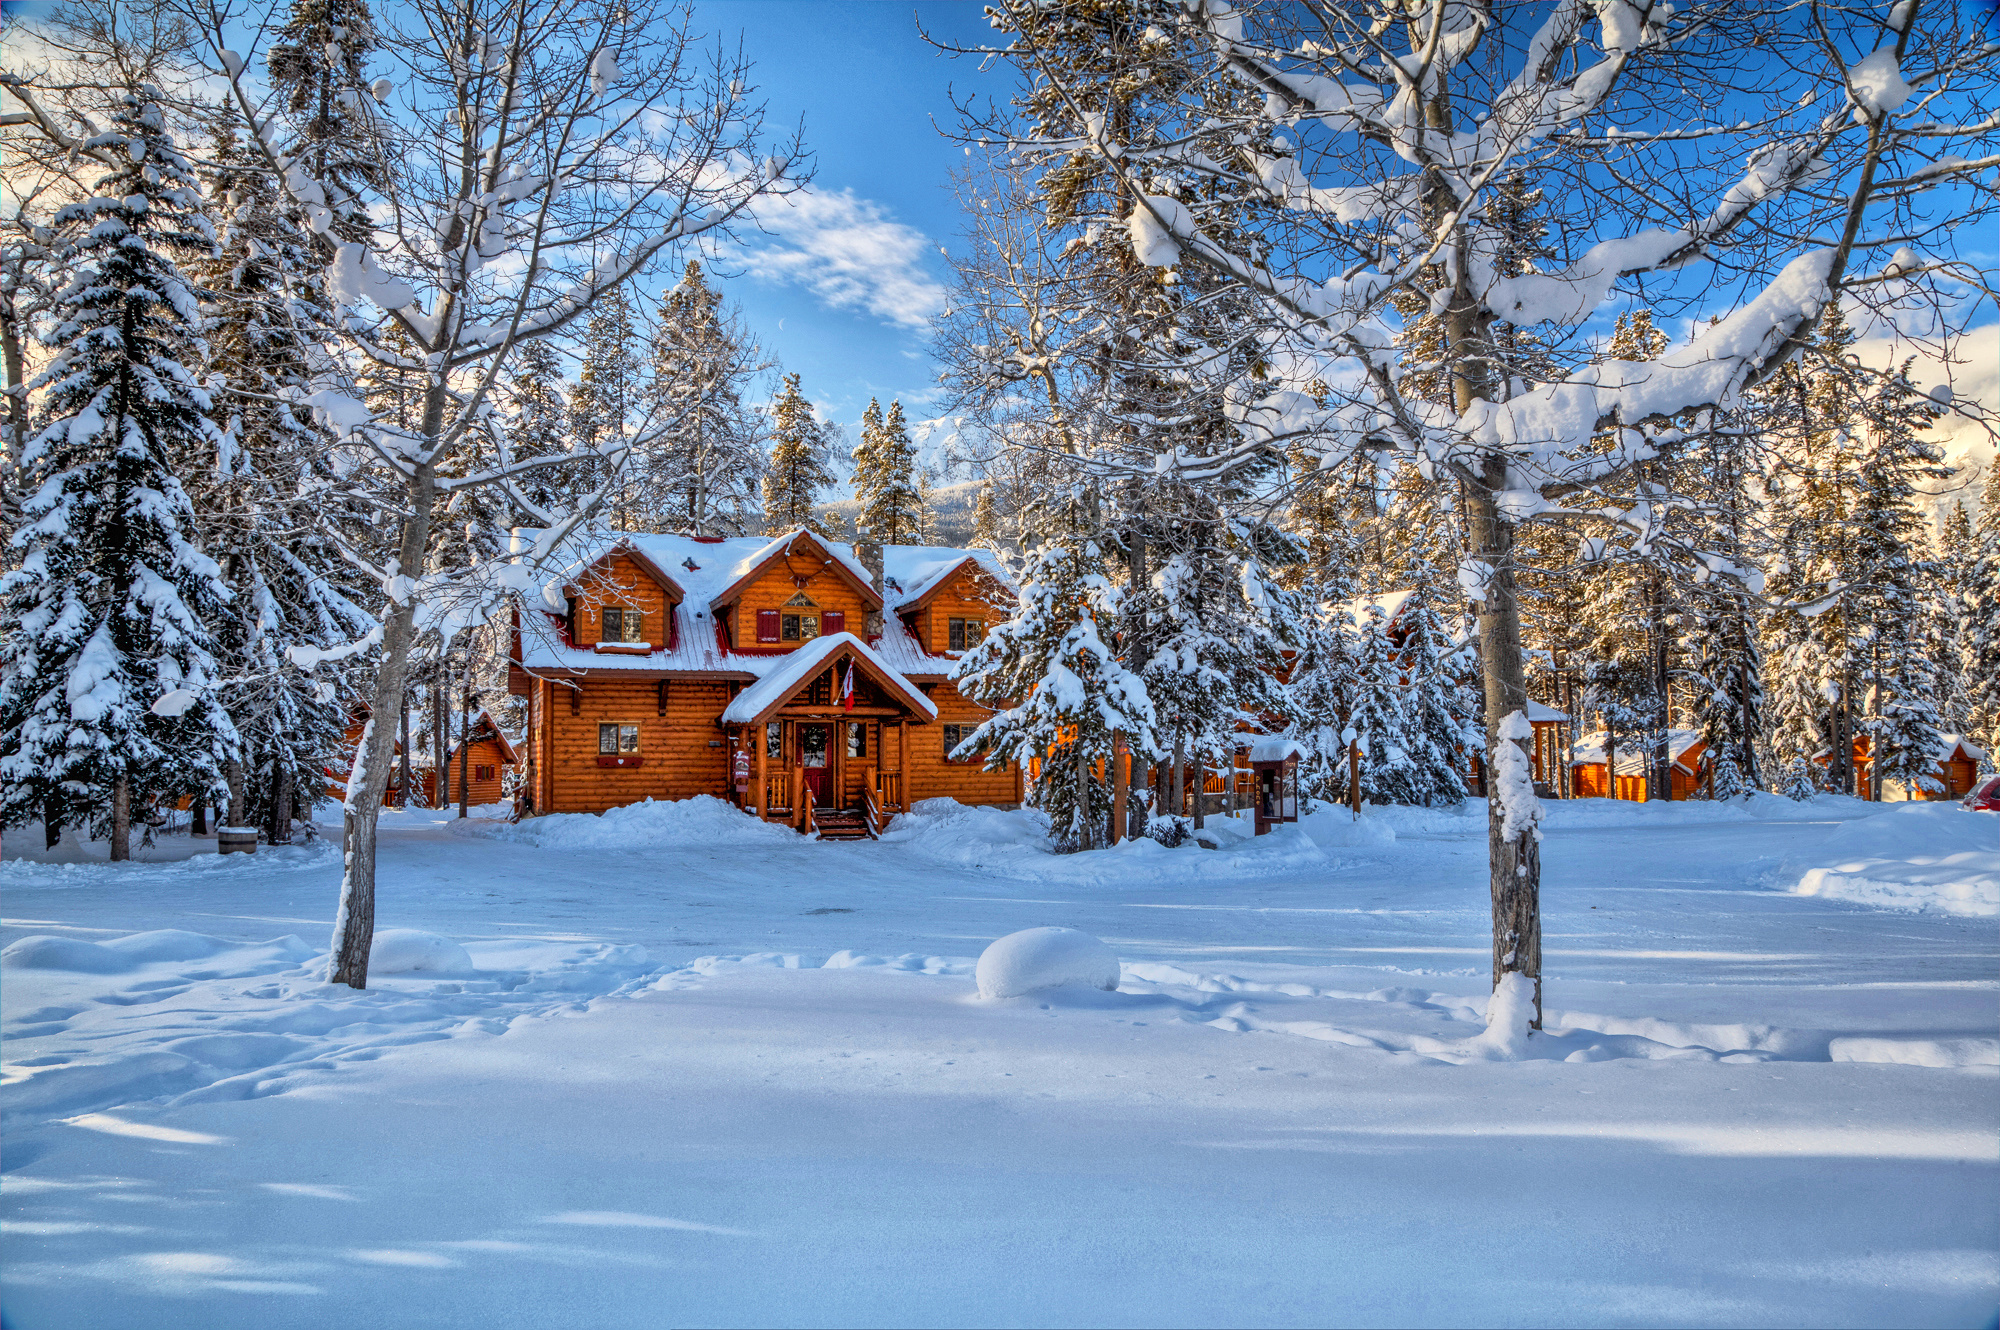 Скачать картинку Зима, Снег, Канада, Дерево, Дом, Поле, Домик, Фотографии в телефон бесплатно.